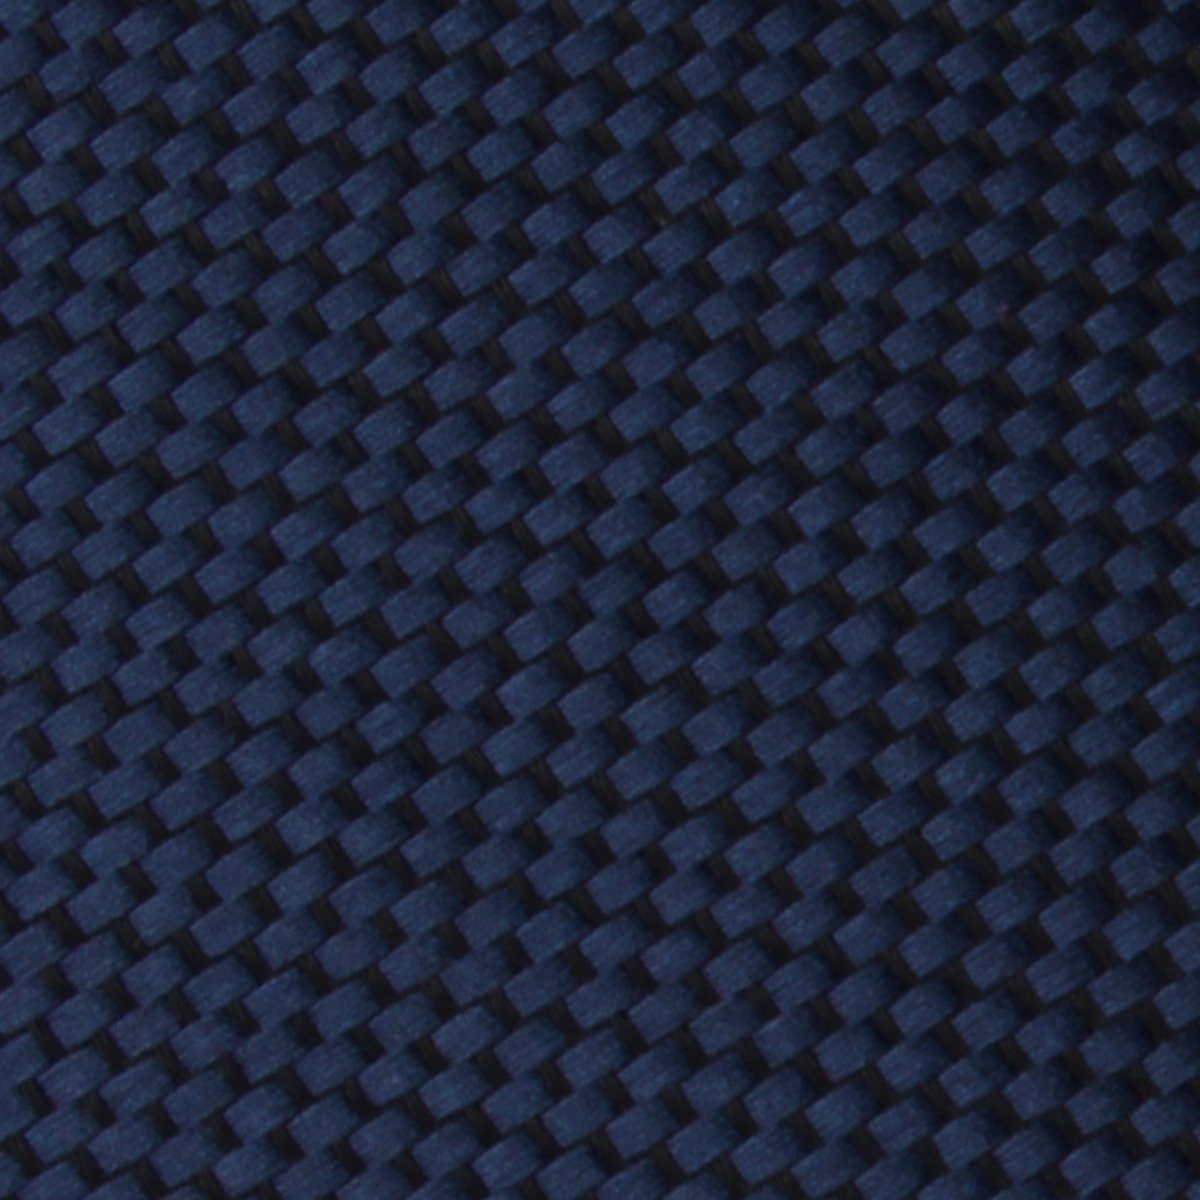 Midnight Blue Oxford Weave Necktie Fabric